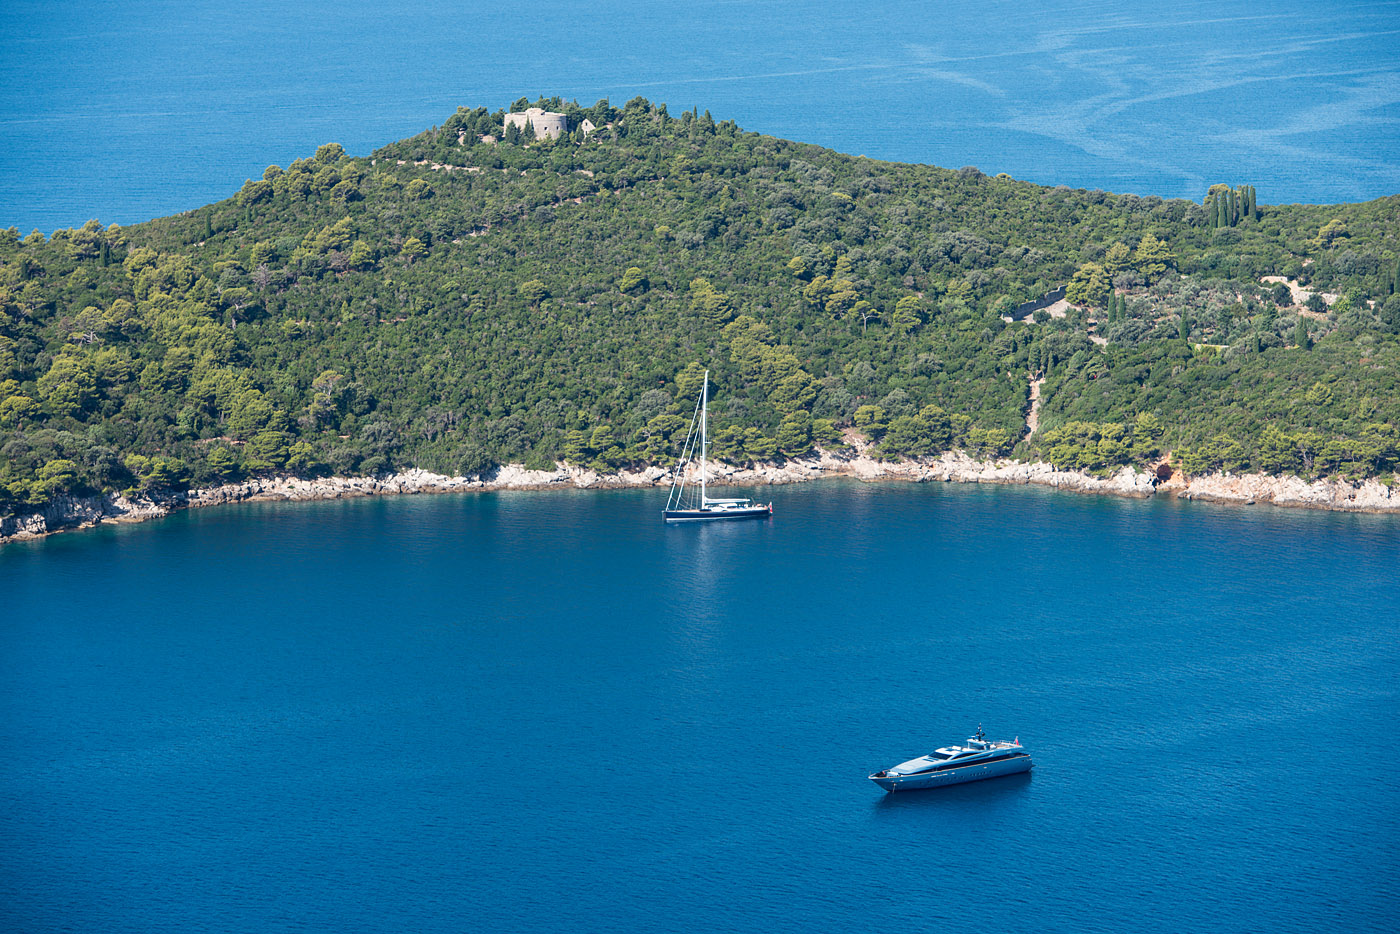 Sailing the Adriatic #2